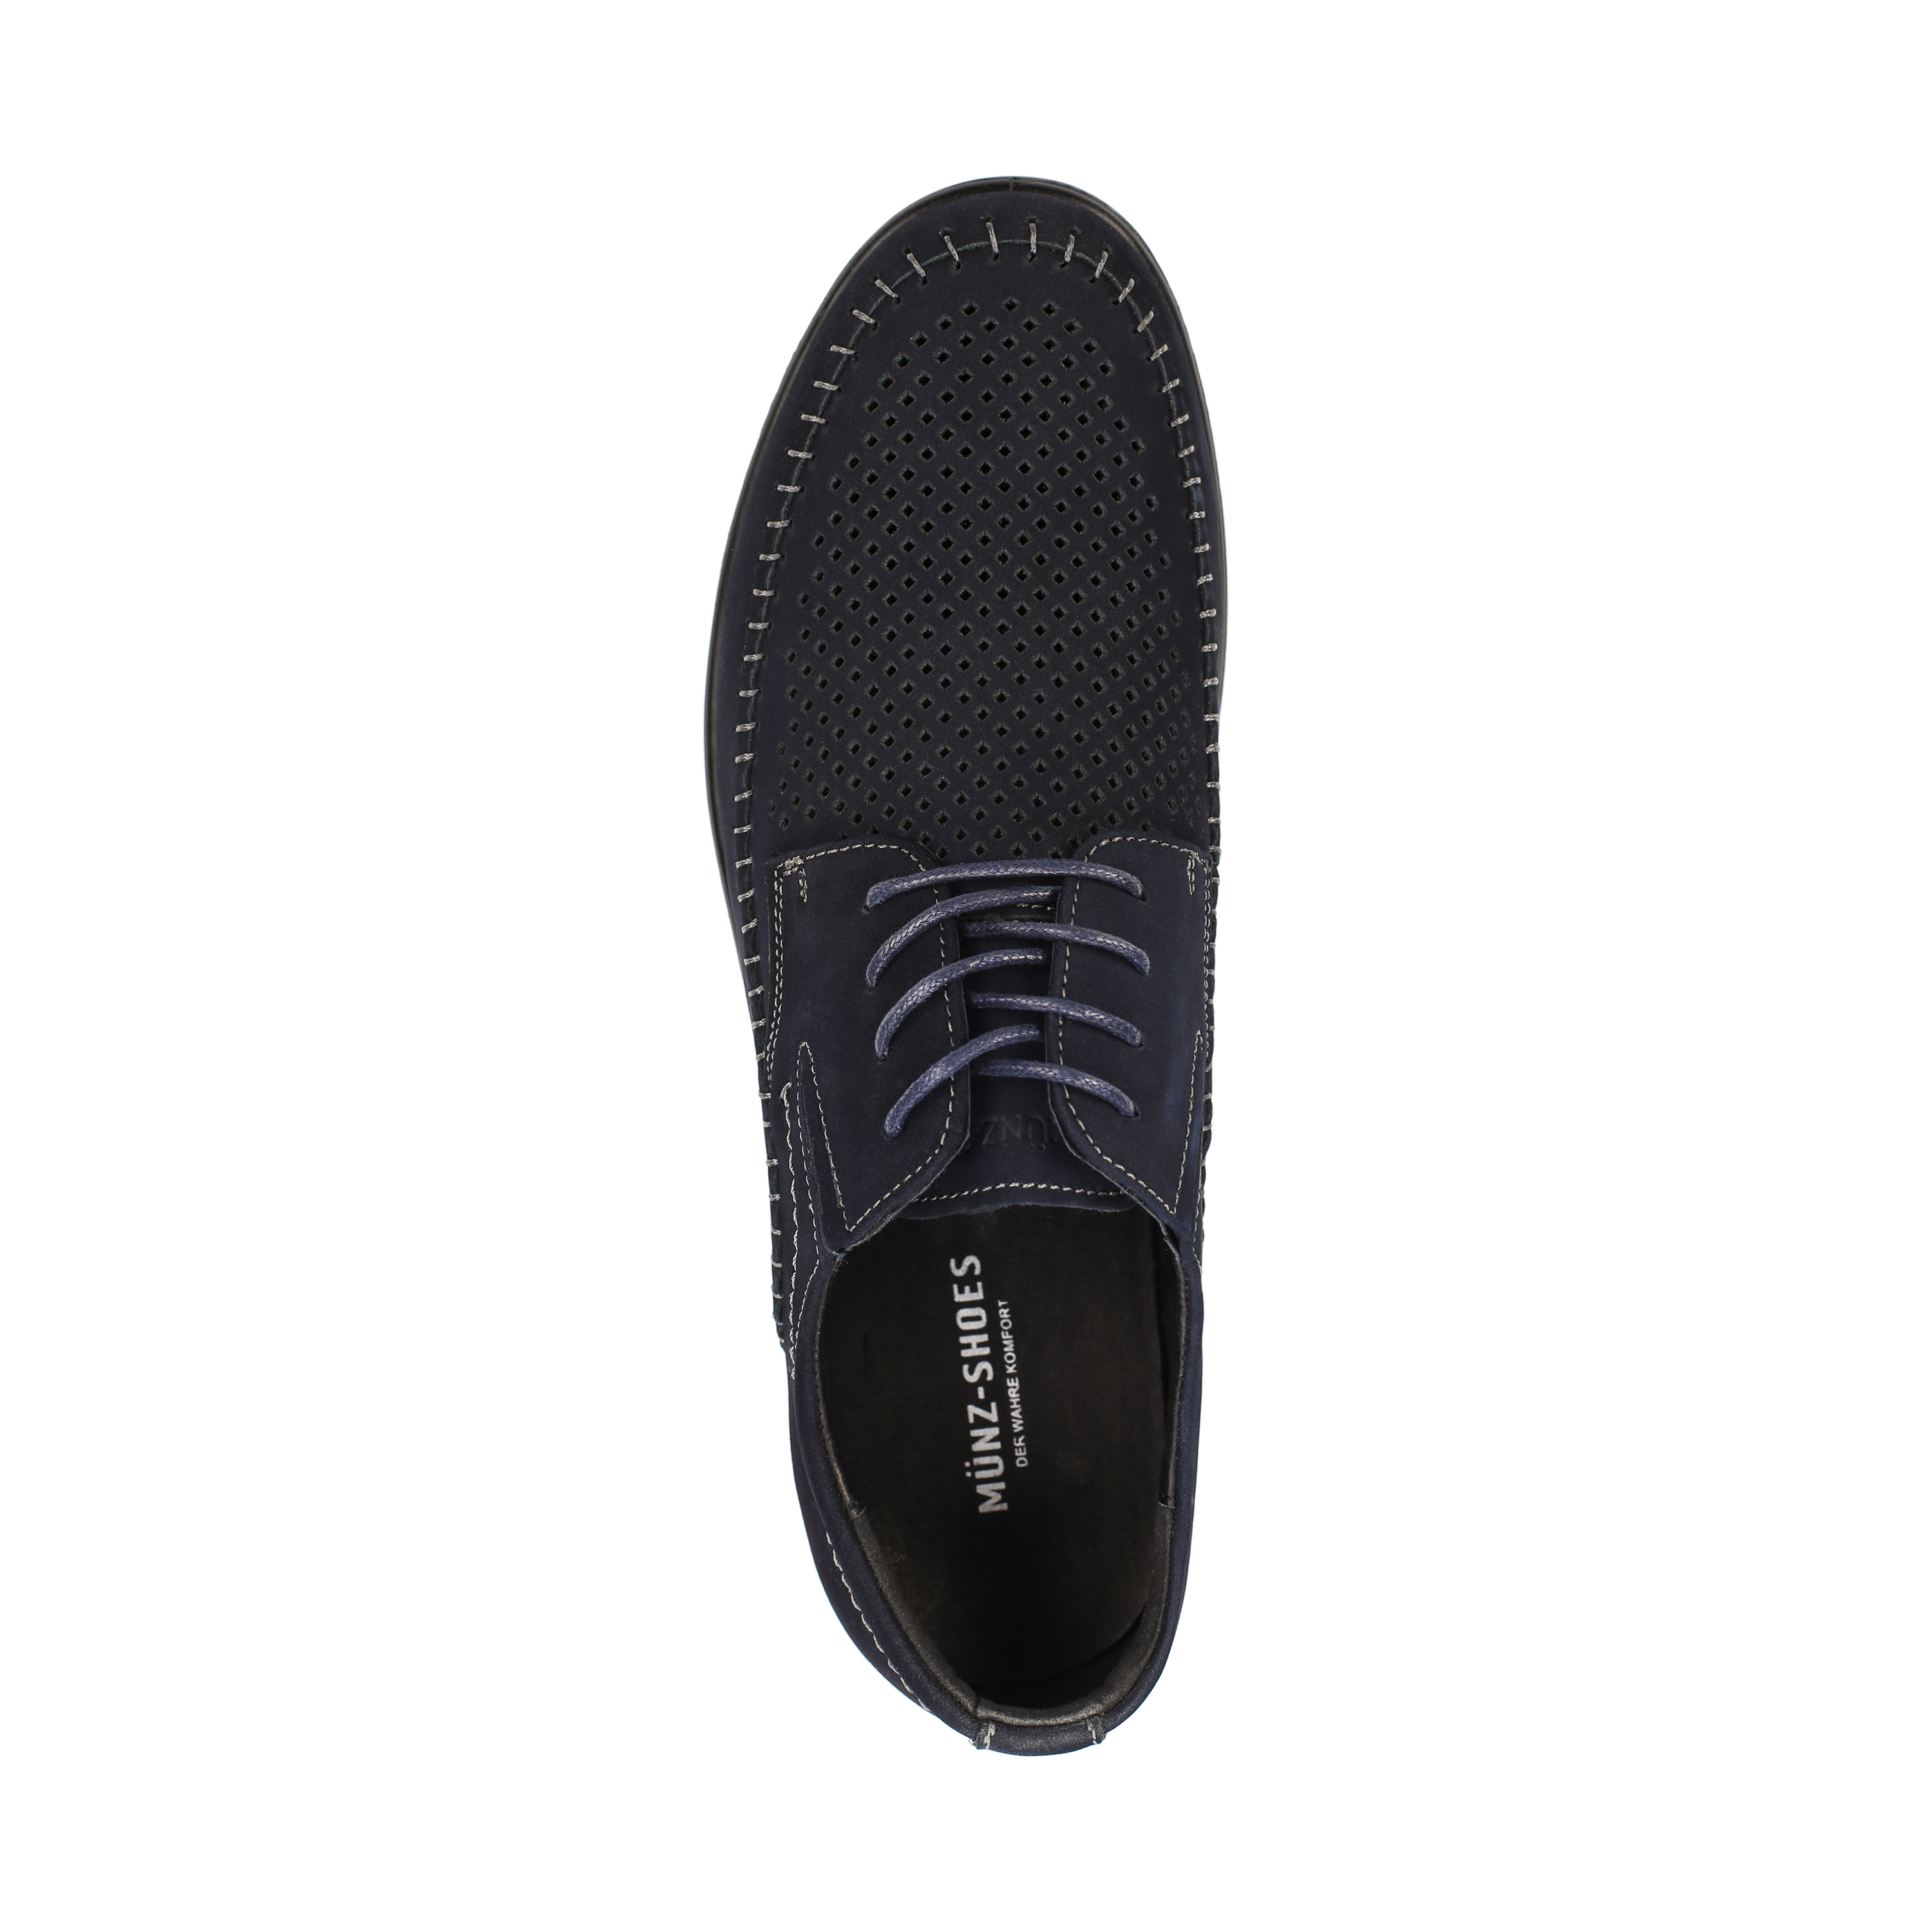 Туфли MUNZ Shoes 059-016A-10303 059-016A-10303, цвет синий, размер 42 полуботинки - фото 5